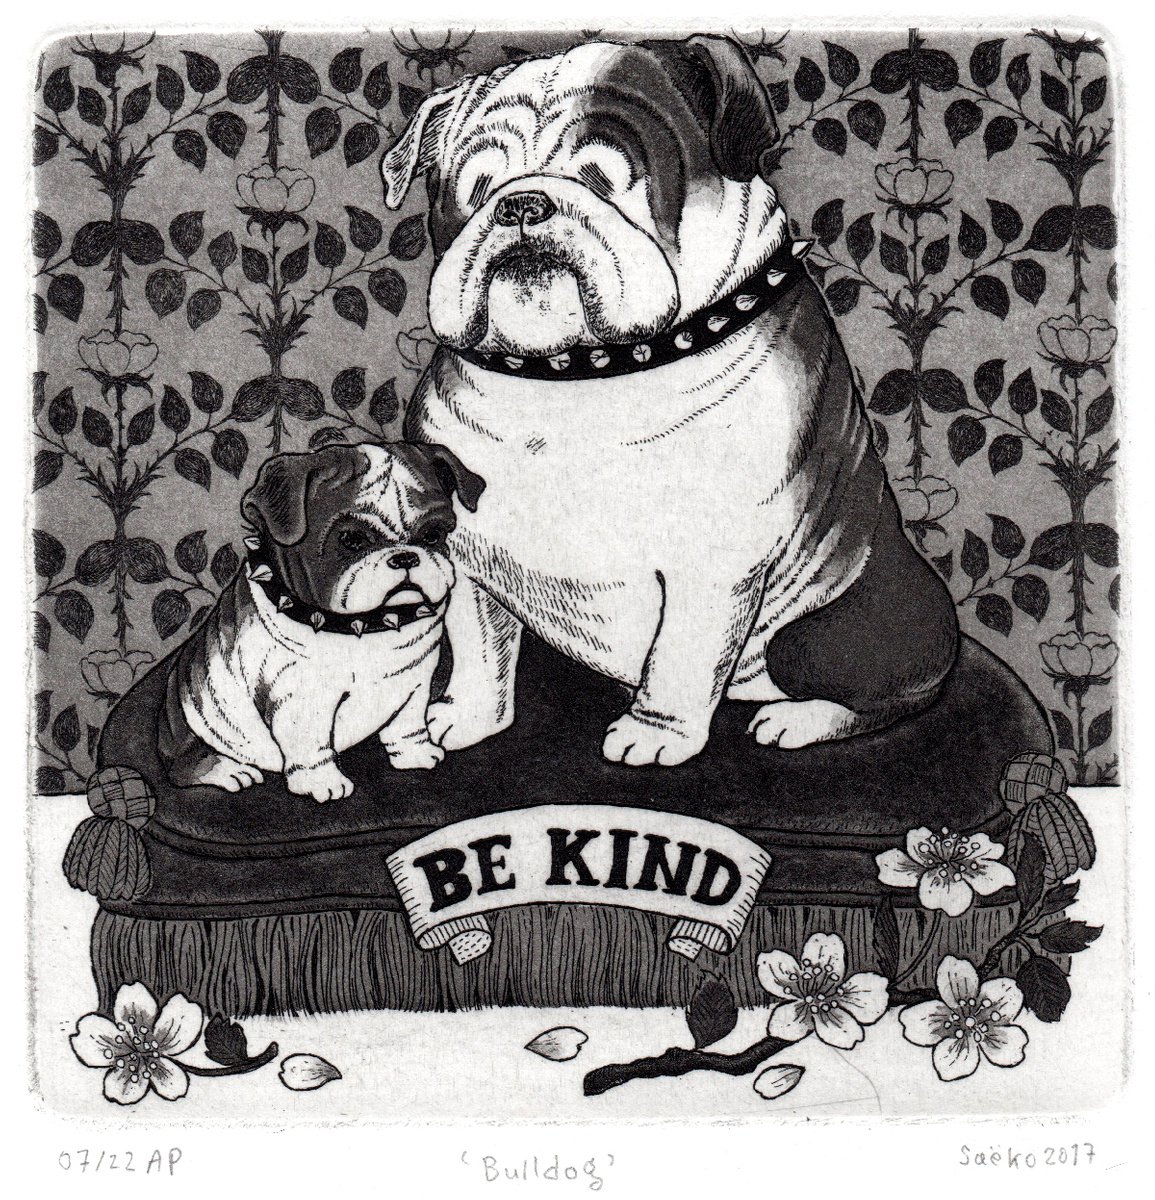 Bulldog - Be Kind by Sa�ko